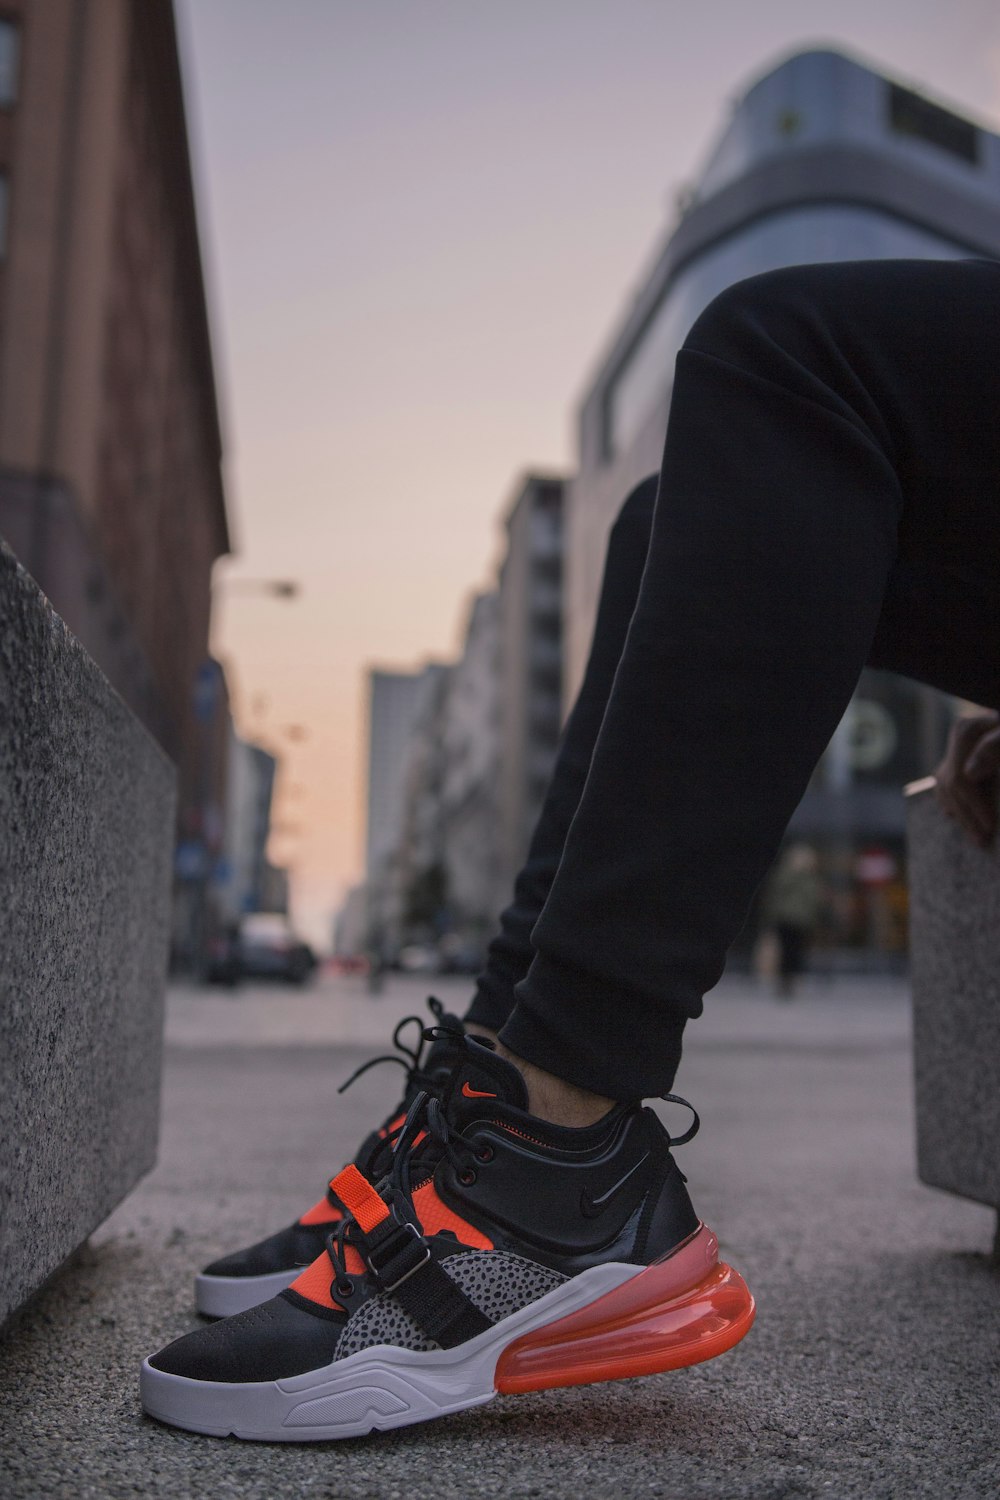 Foto persona con zapatillas Nike Air Max 270 negras y grises – Imagen  Varsovia gratis en Unsplash